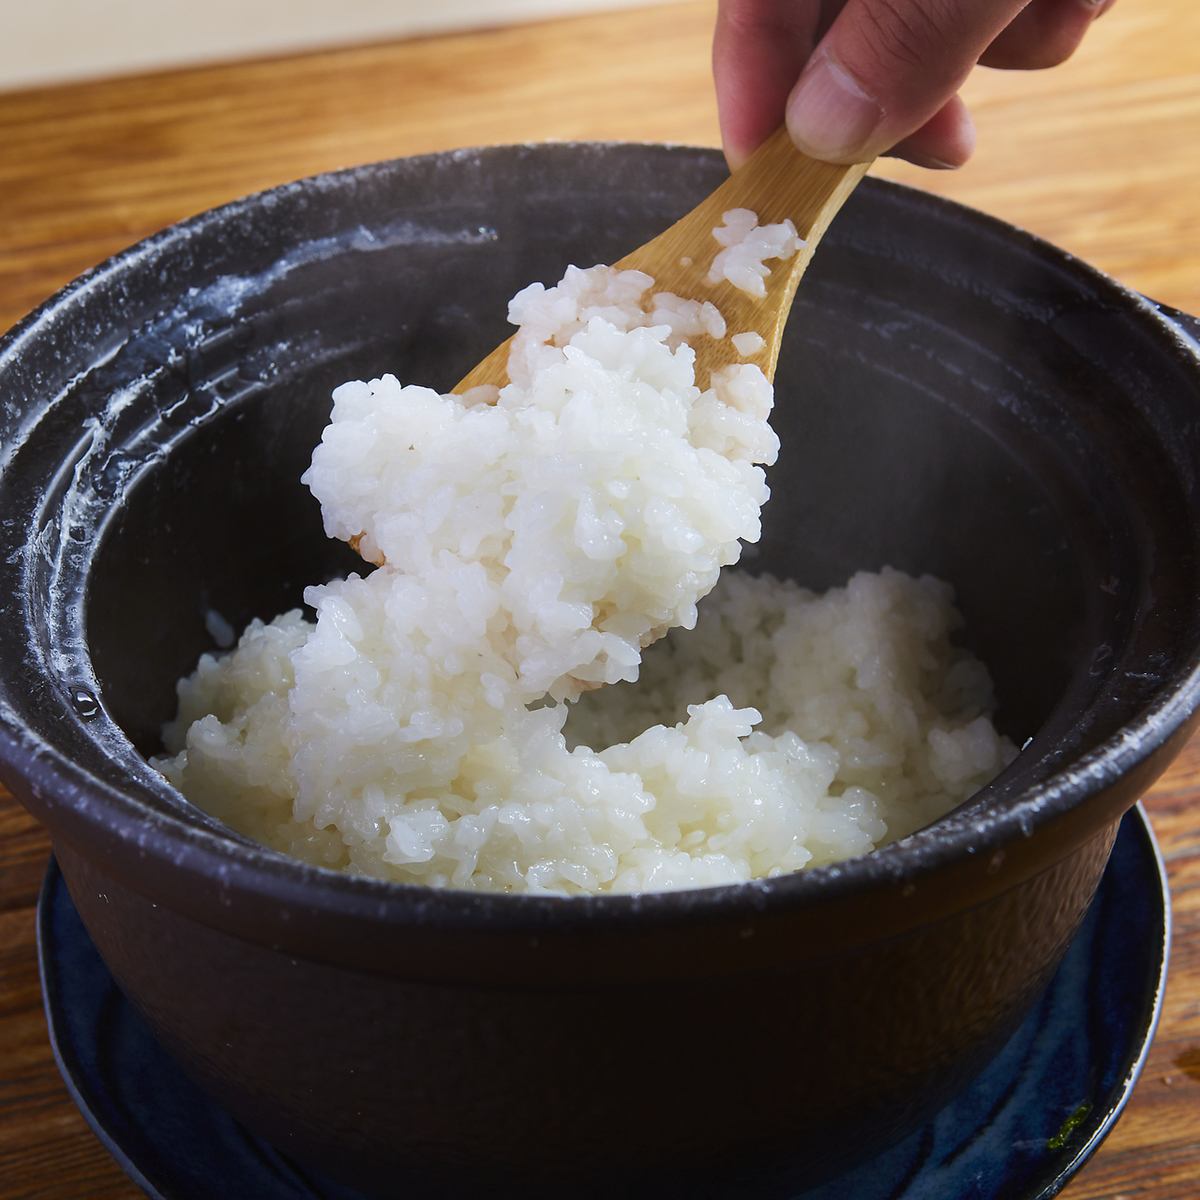 我们讲究火候和烹调，以最大限度地发挥米饭的美味。